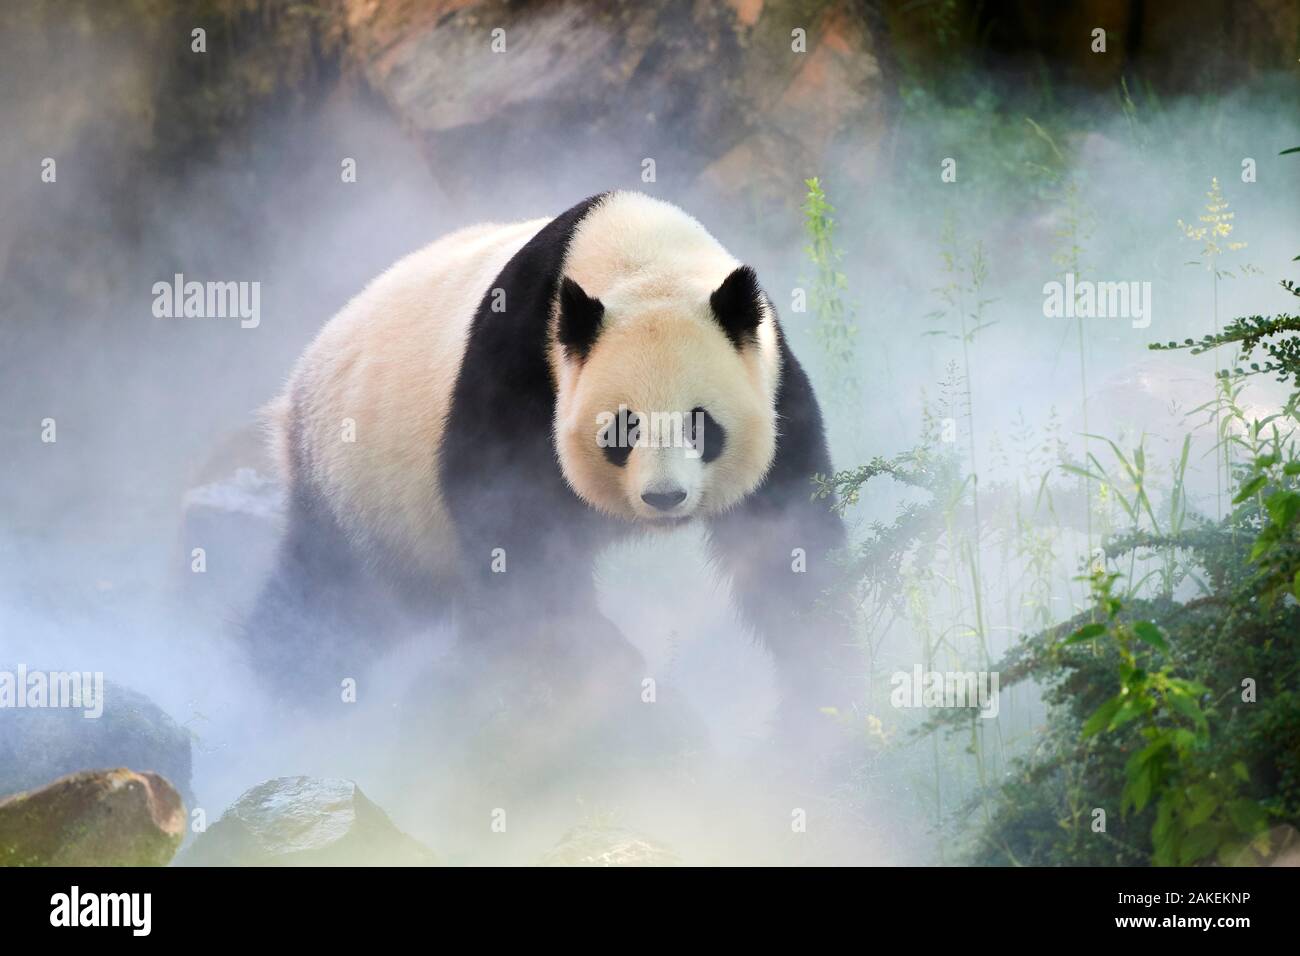 El panda gigante (Ailuropoda melanoleuca) femeninos, Huan Huan, en su gabinete en la niebla, cautivo de Beauval Zoo, Saint Aignan sur Cher, Francia La niebla es creado artificialmente por la máquina, a fin de crear un ambiente más fresco, más cercana a las condiciones de su hábitat natural de montaña en China Foto de stock